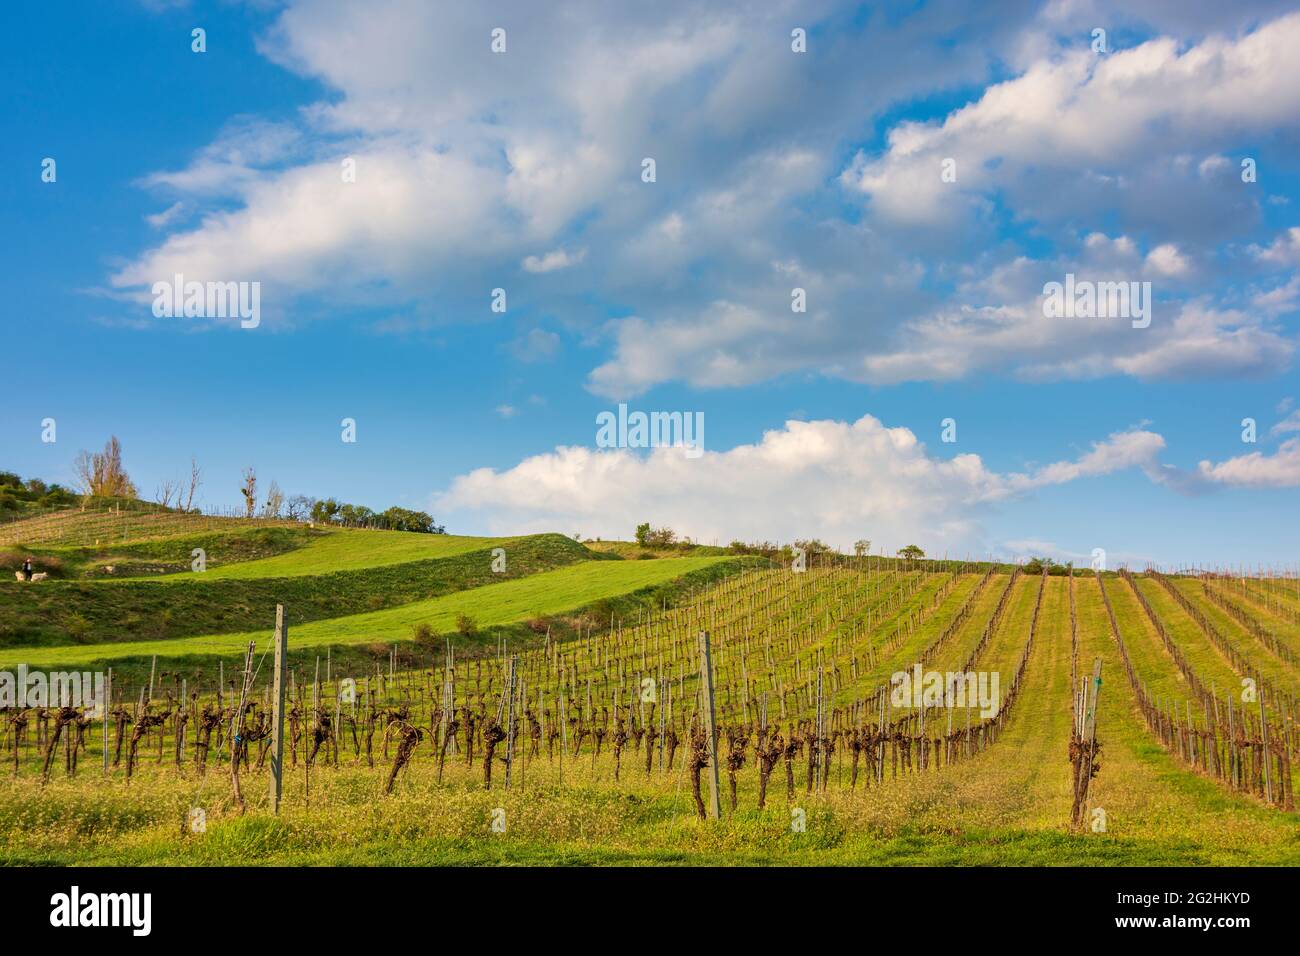 Guntramsdorf, vineyard at mountain Eichkogel in Wienerwald / Vienna Woods, Niederösterreich / Lower Austria, Austria Stock Photo